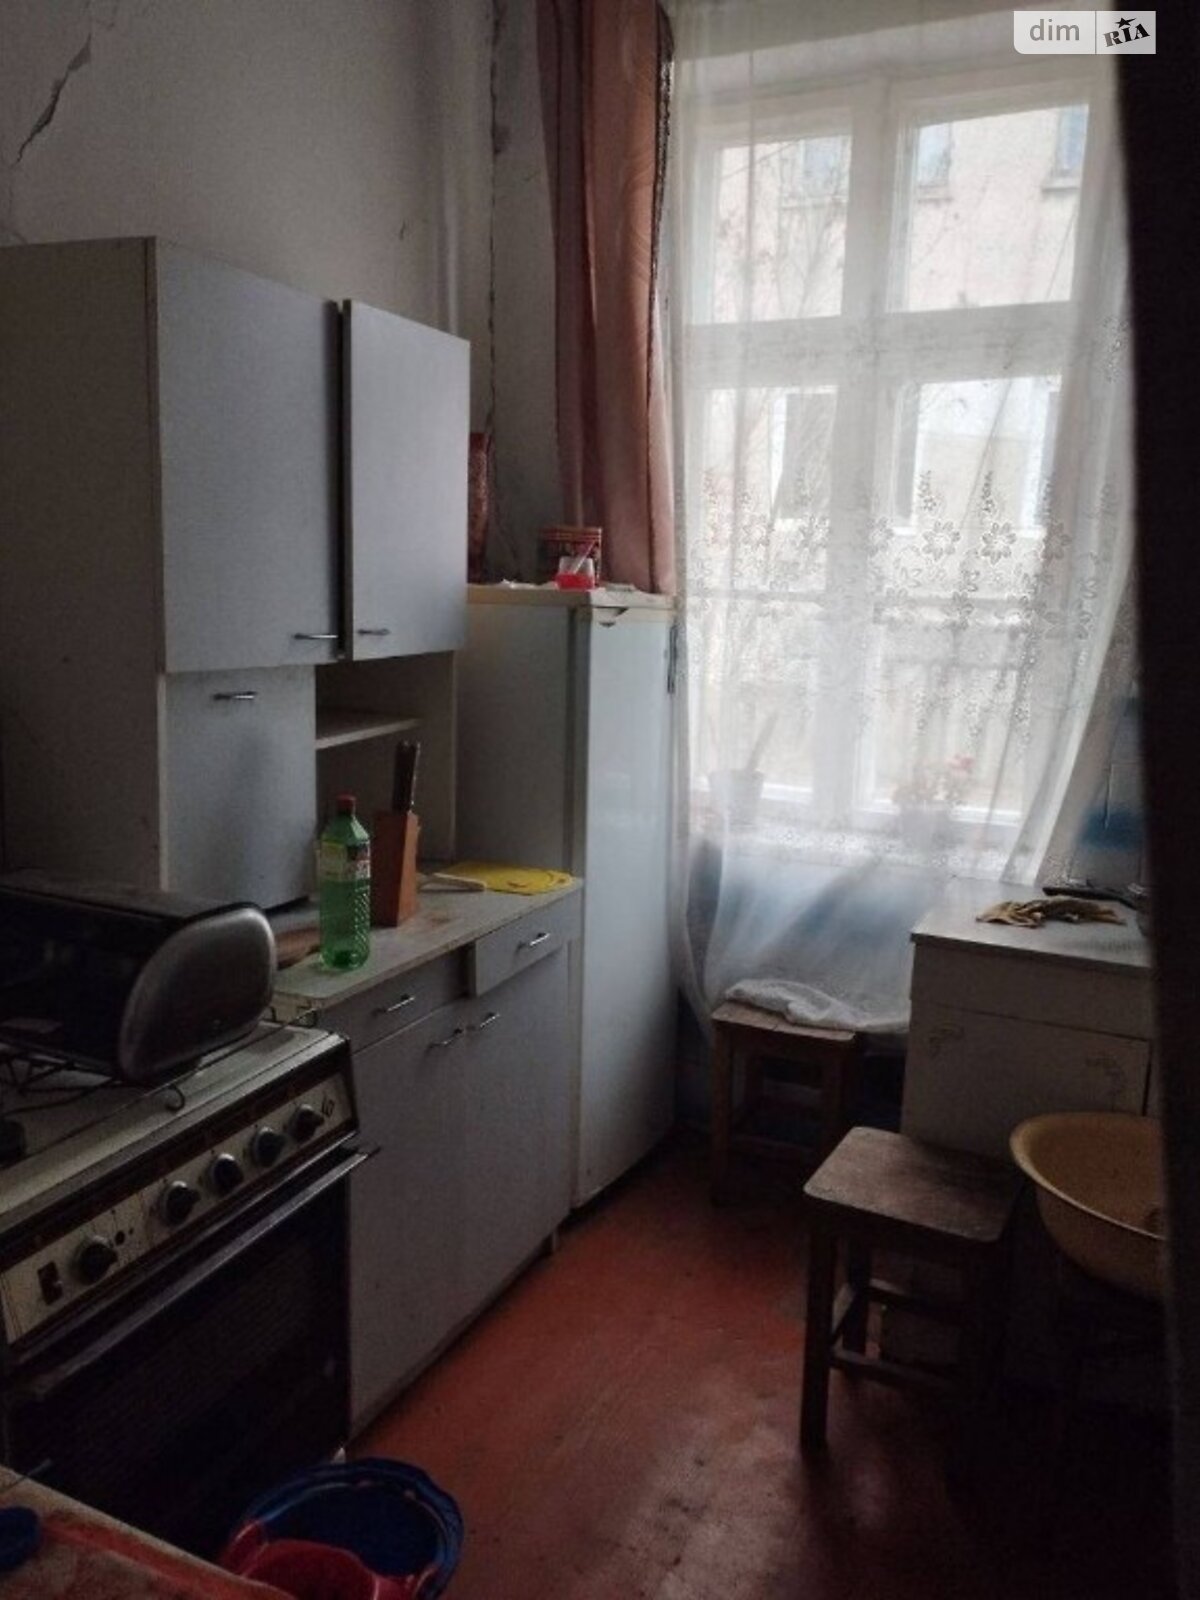 Продаж частини будинку в Комарному, вулиця Шевська, 3 кімнати фото 1